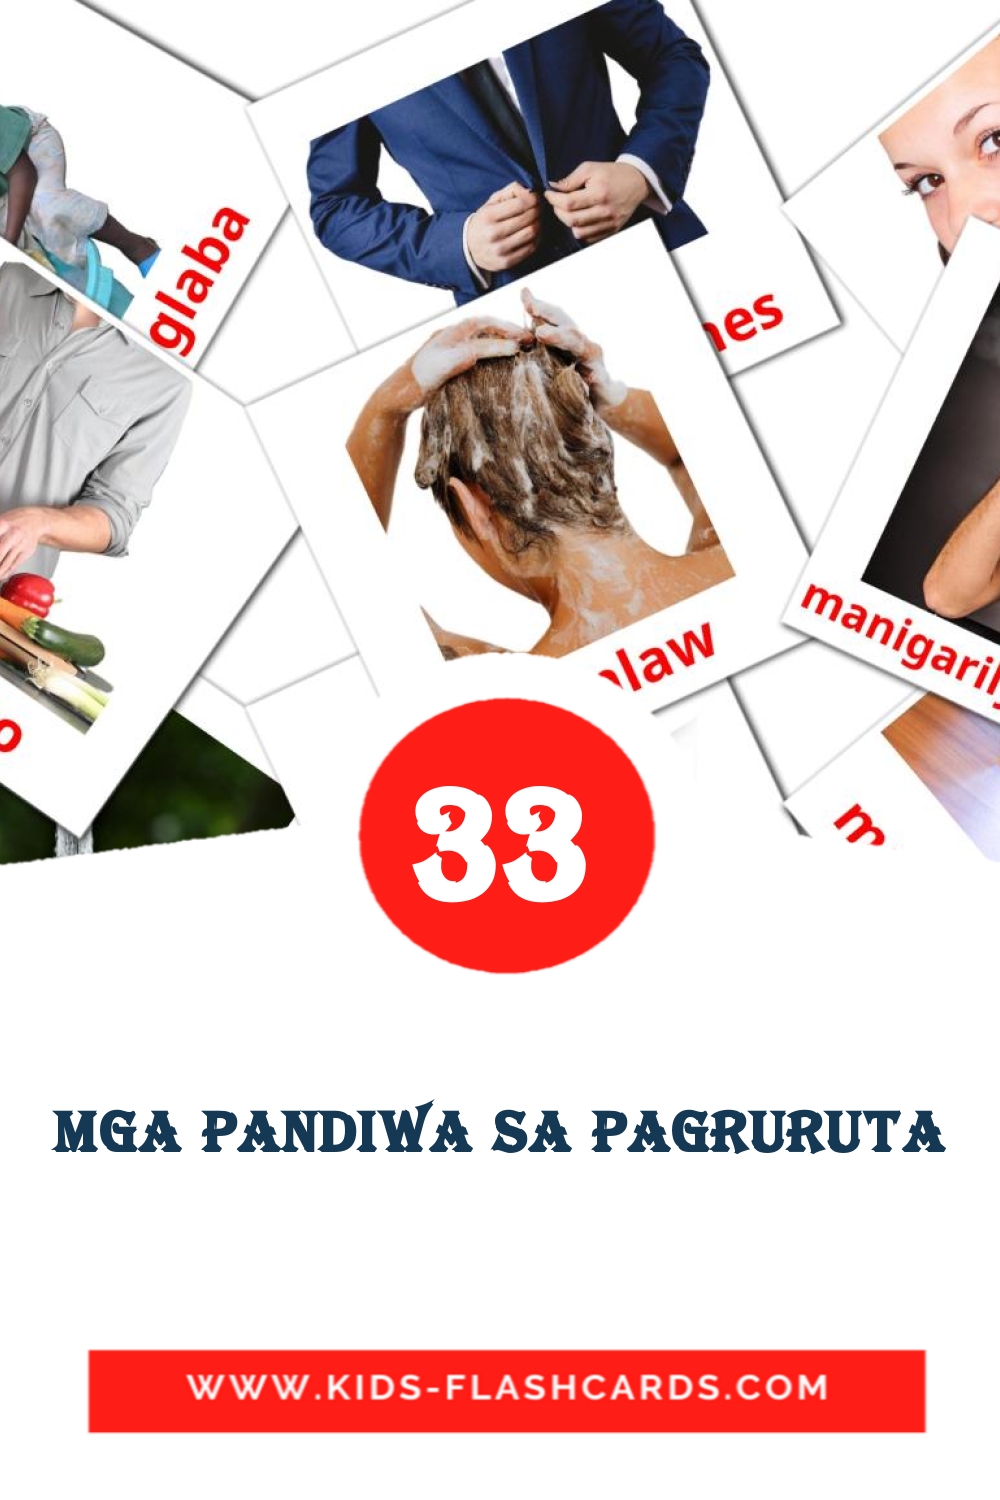 33 carte illustrate di Mga pandiwa sa pagruruta per la scuola materna in filippino